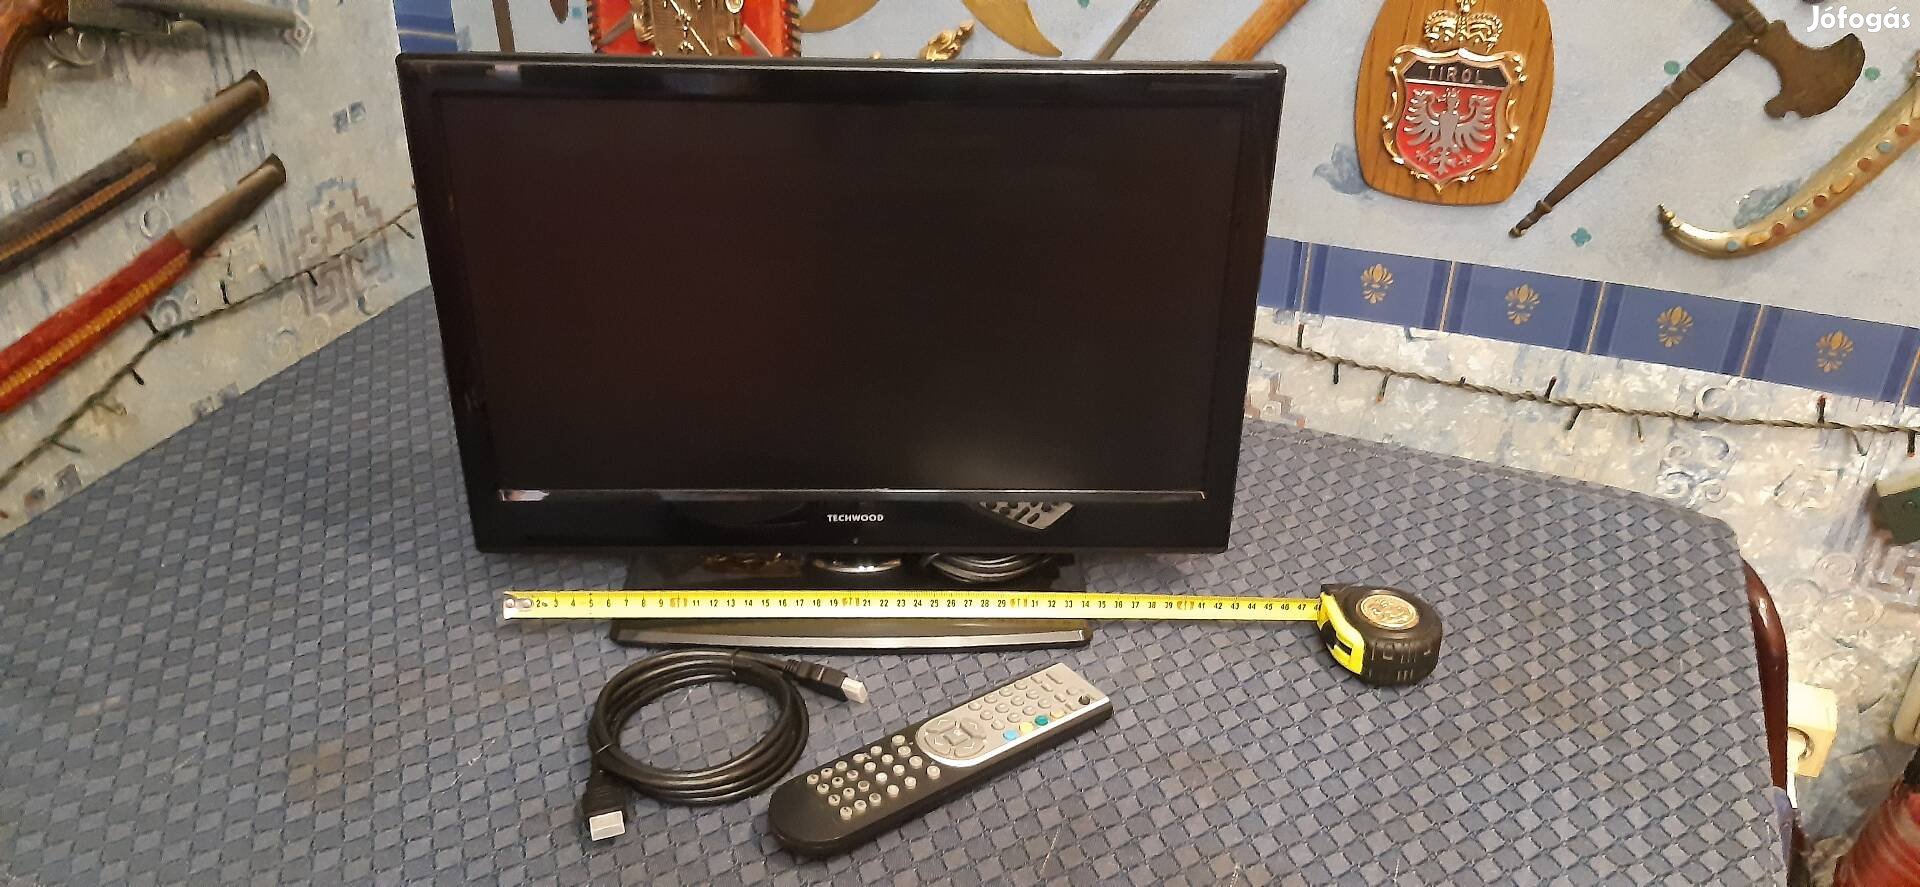 Kisméretű led tv 46cm